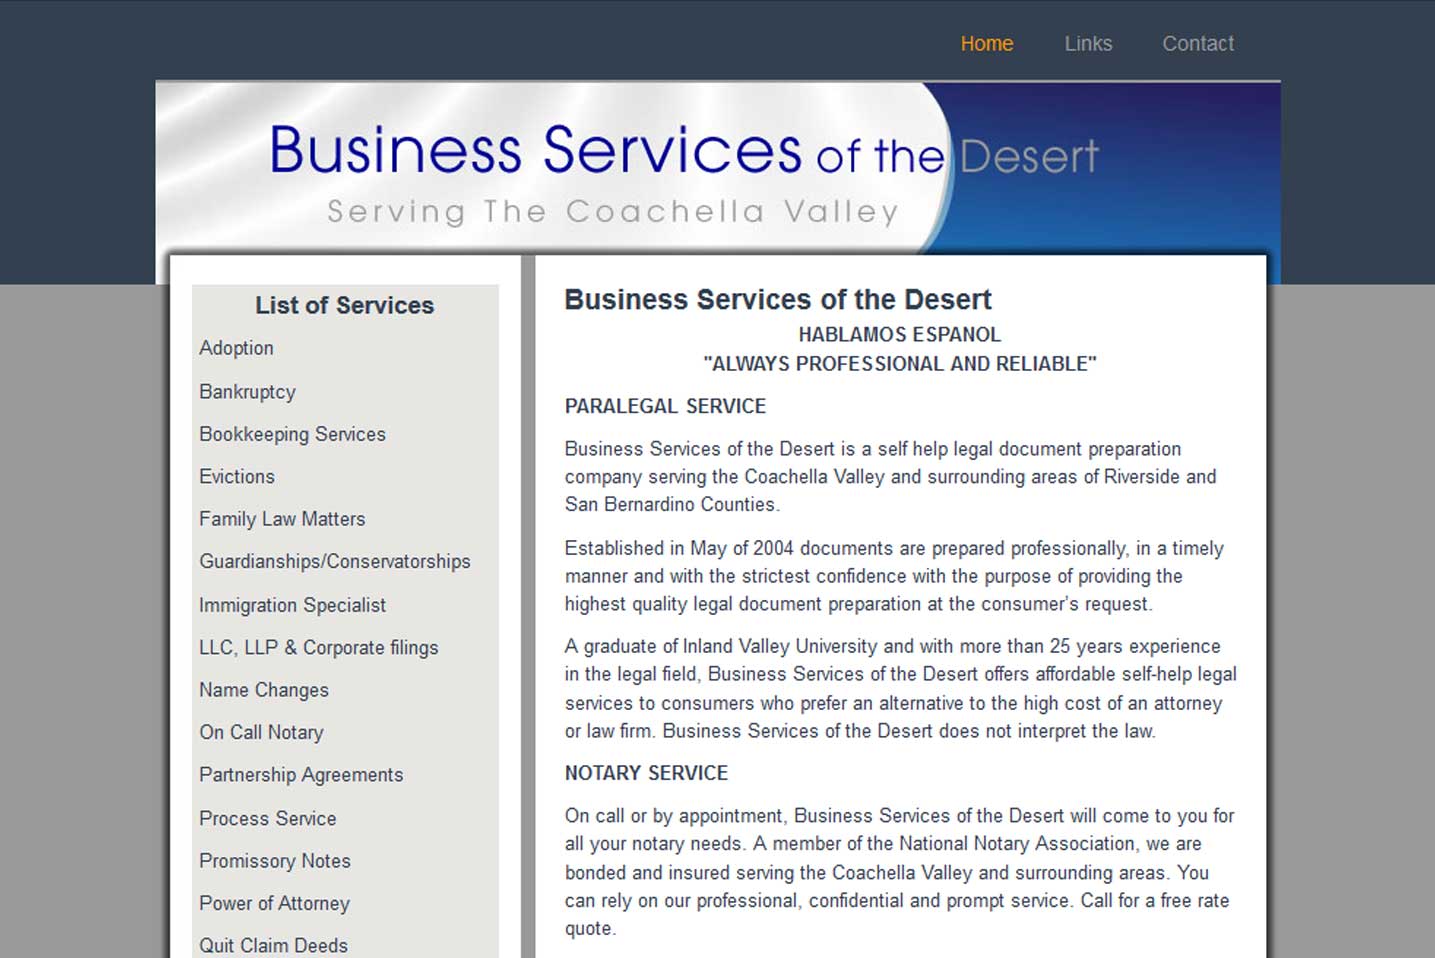 Business Servics of the Desert